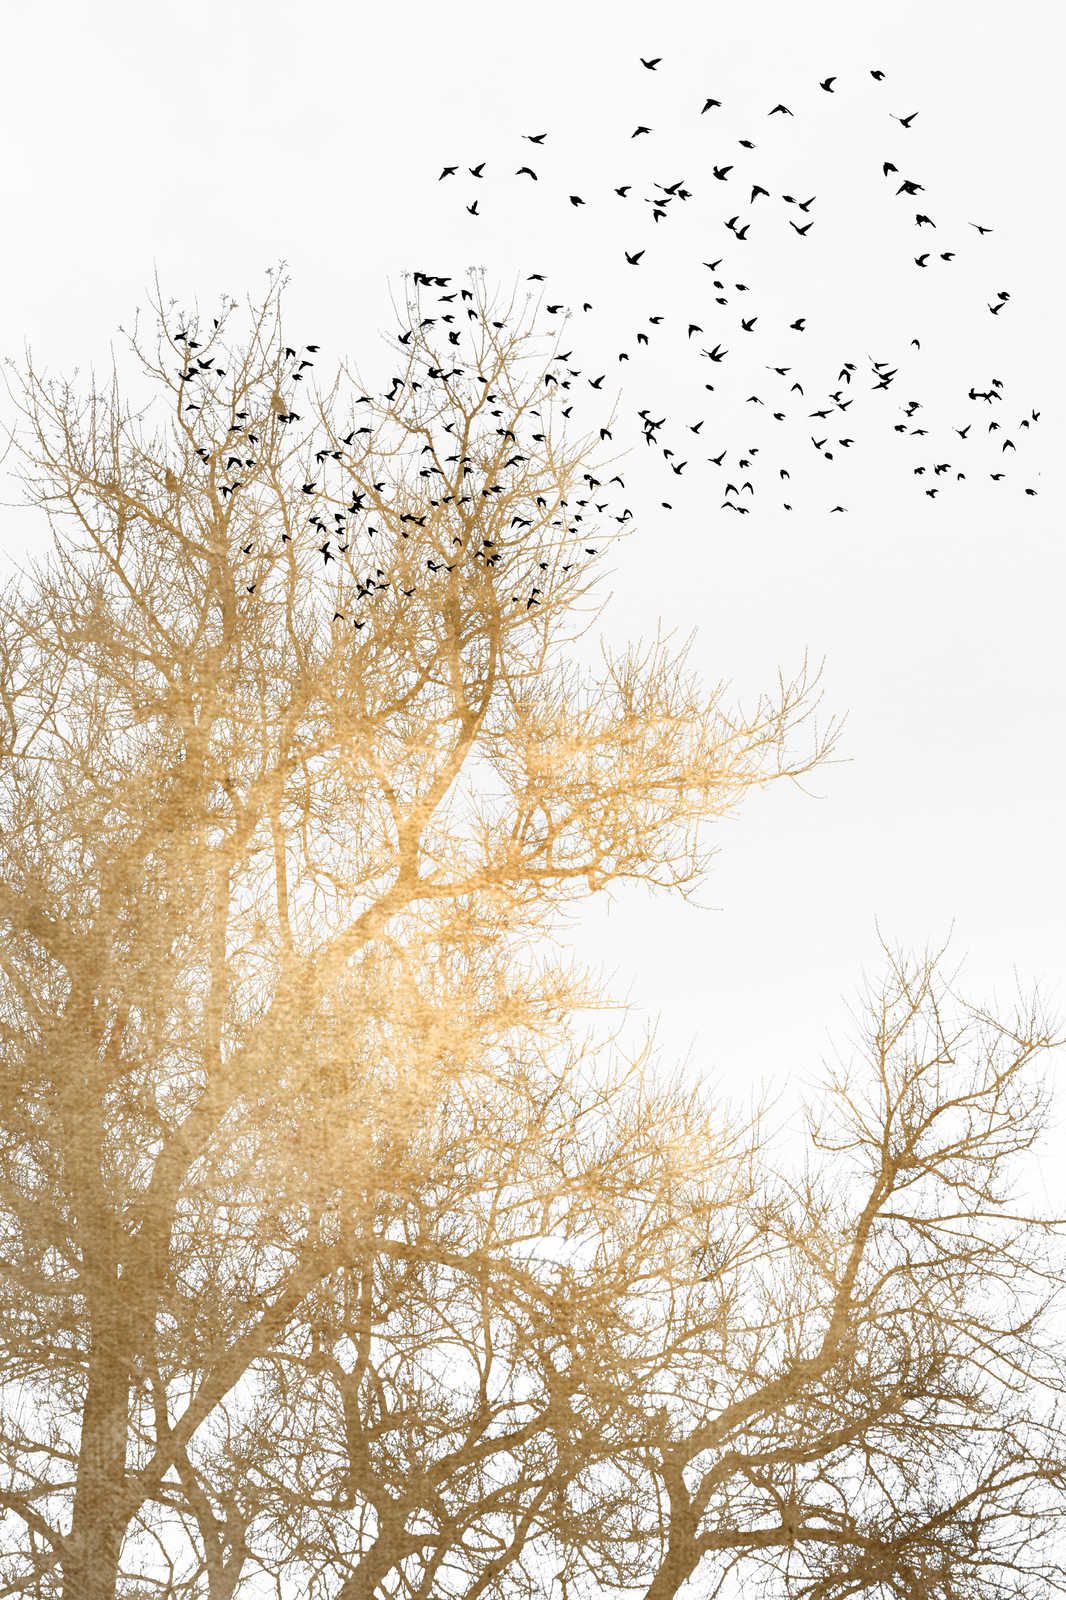             Quadro su tela con alberi dorati e stormo di uccelli - 0,90 m x 0,60 m
        